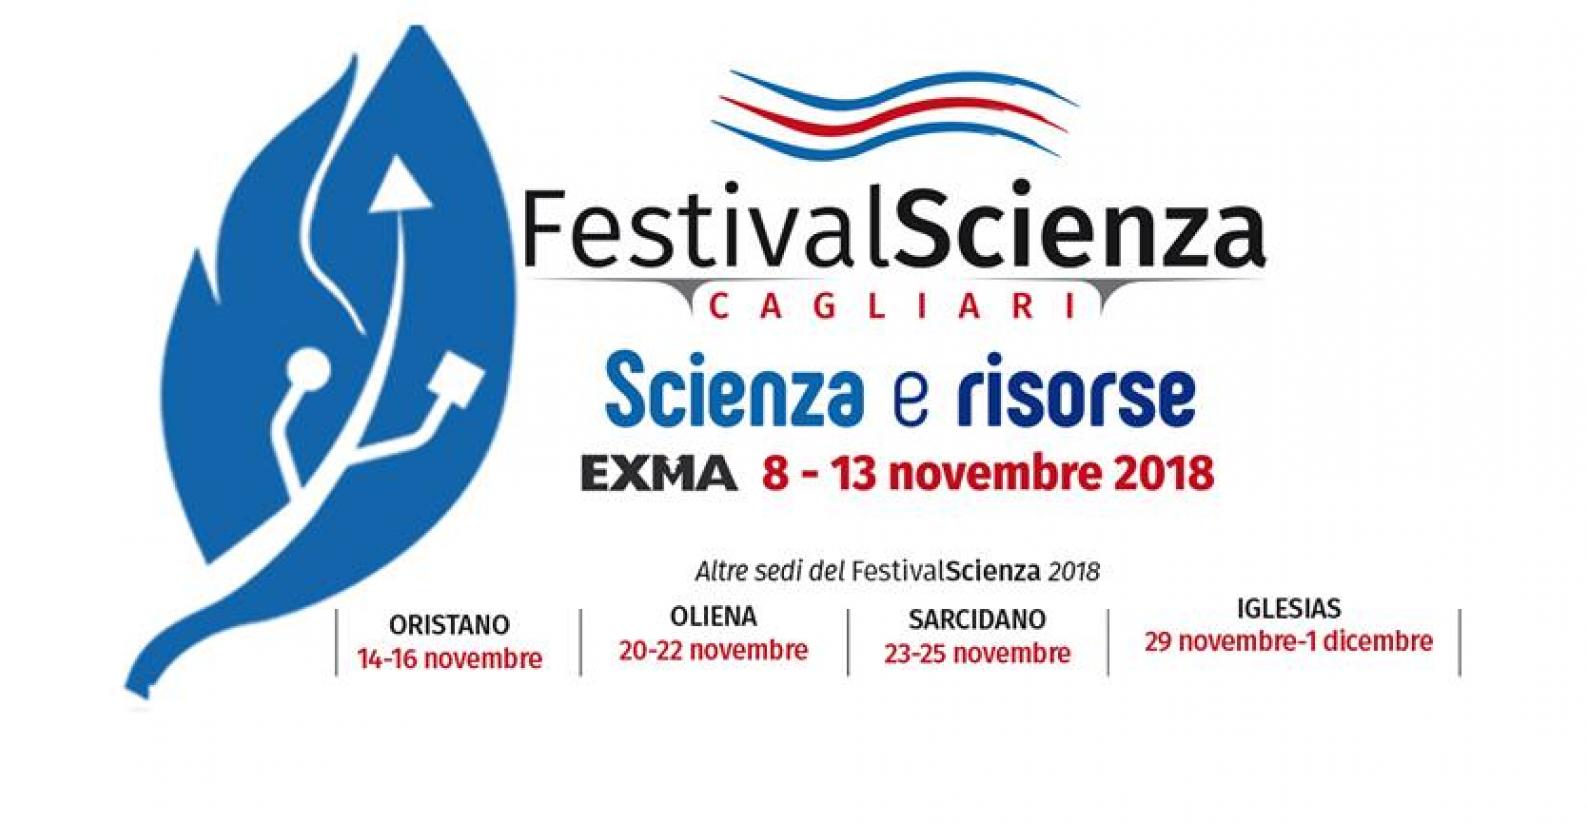 Scienza e Risorse al Cagliari Festivalscienza